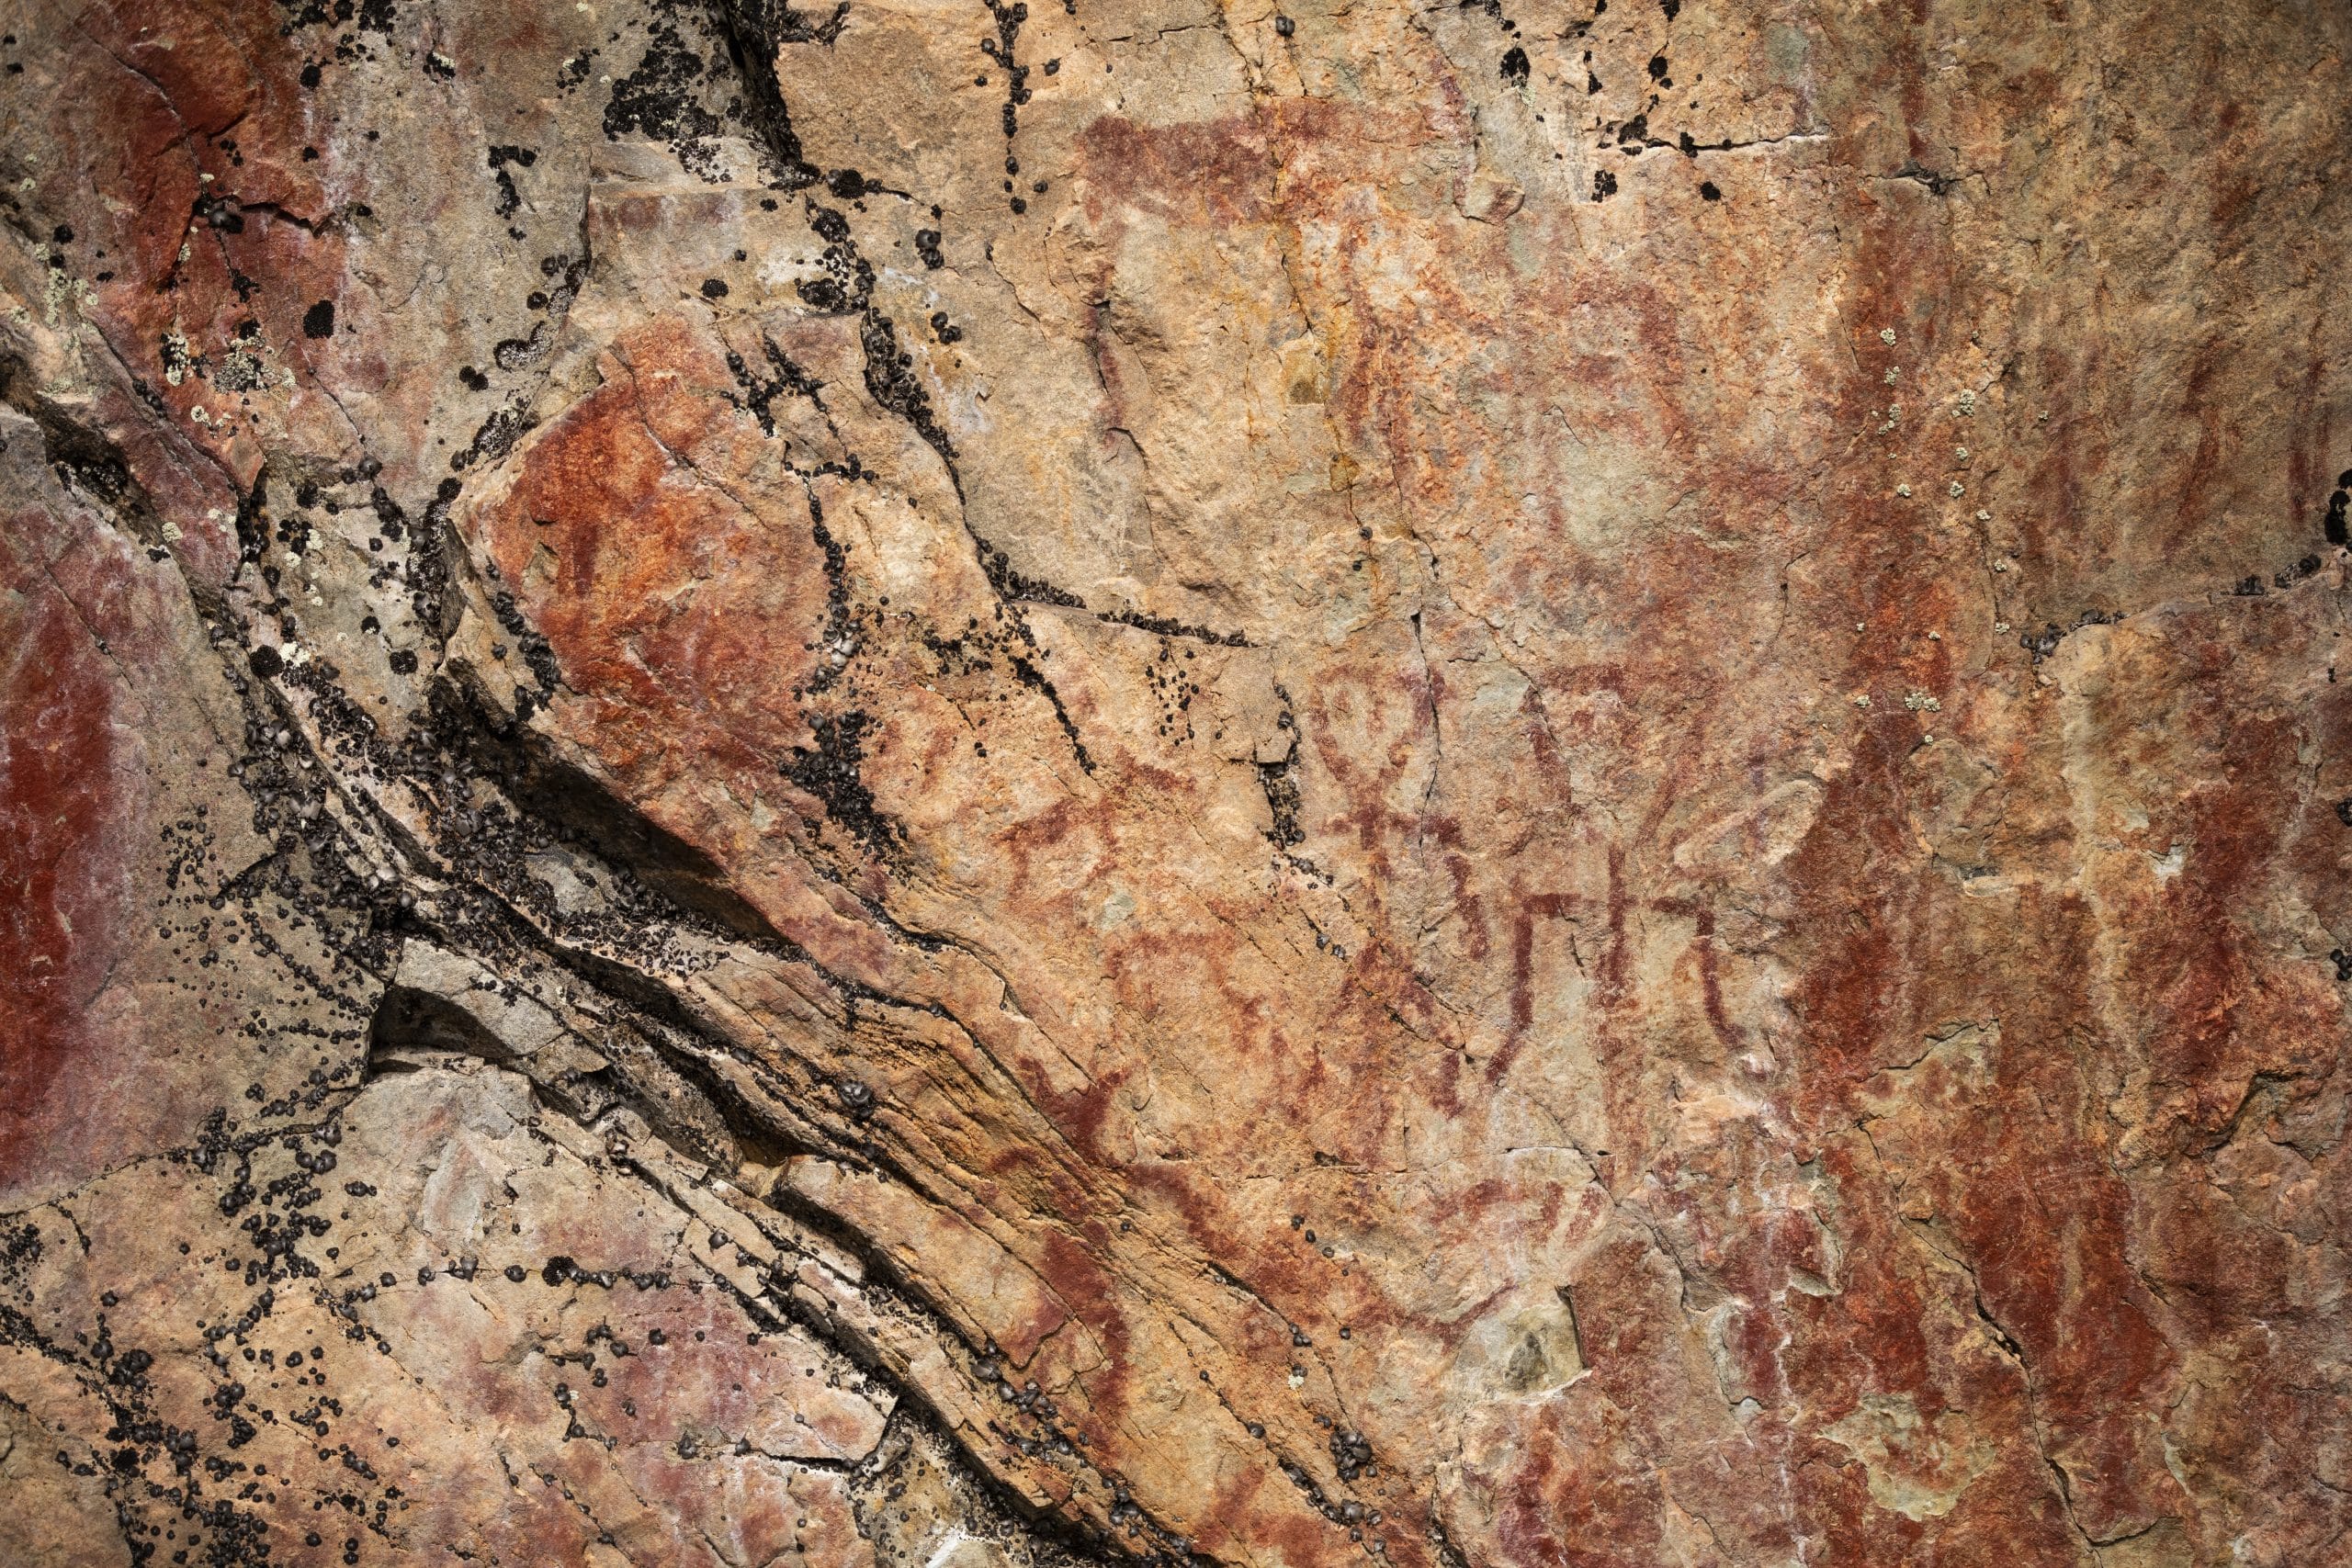 Värikallion kalliomaaloukset Hossassa, tikku-ukko hahmo sekä eläinhahmoja.